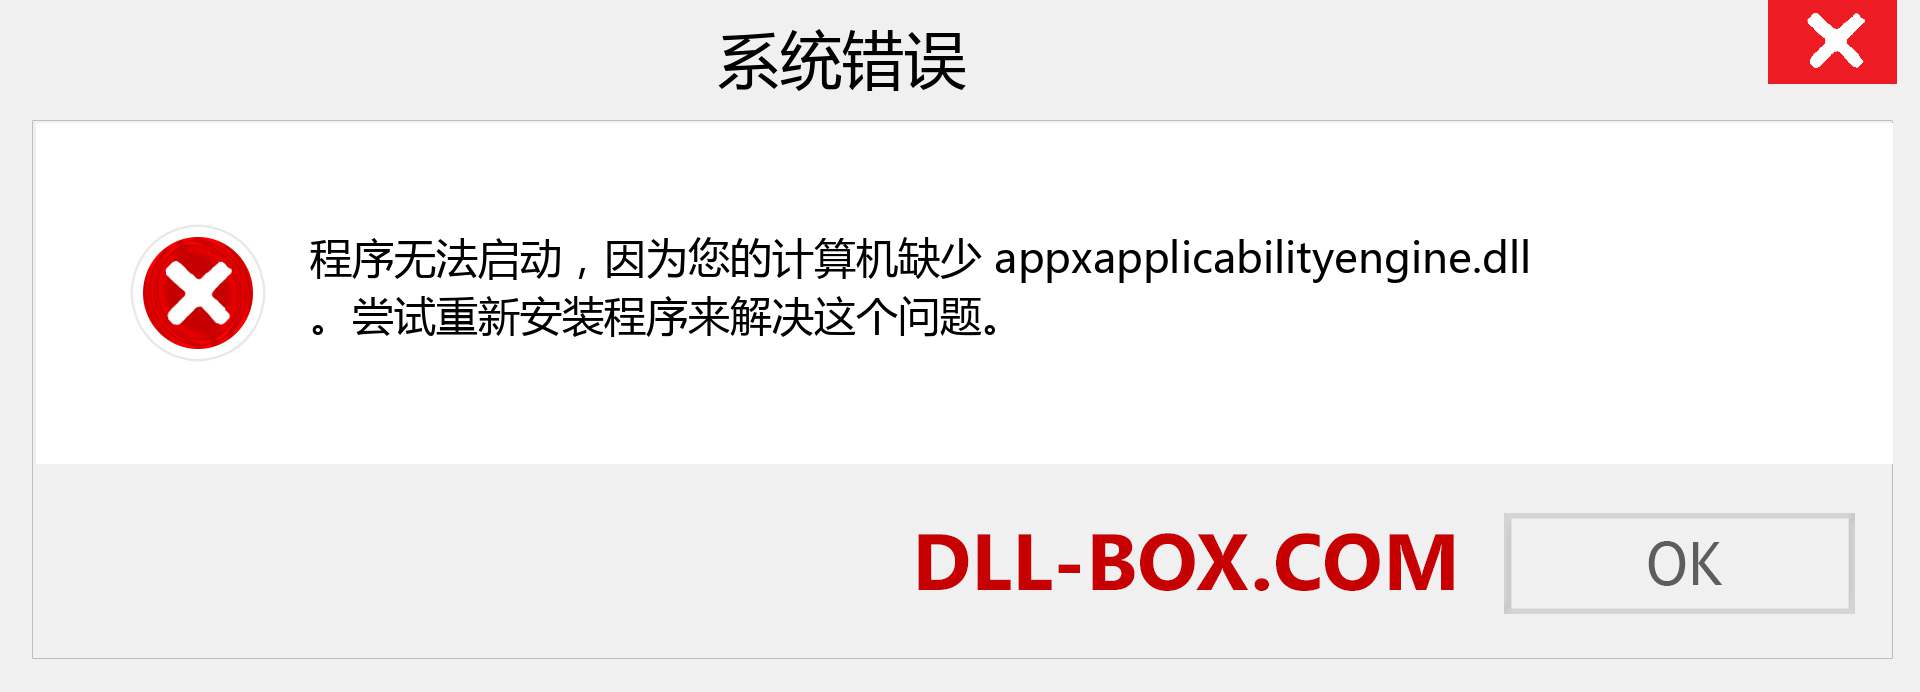 appxapplicabilityengine.dll 文件丢失？。 适用于 Windows 7、8、10 的下载 - 修复 Windows、照片、图像上的 appxapplicabilityengine dll 丢失错误